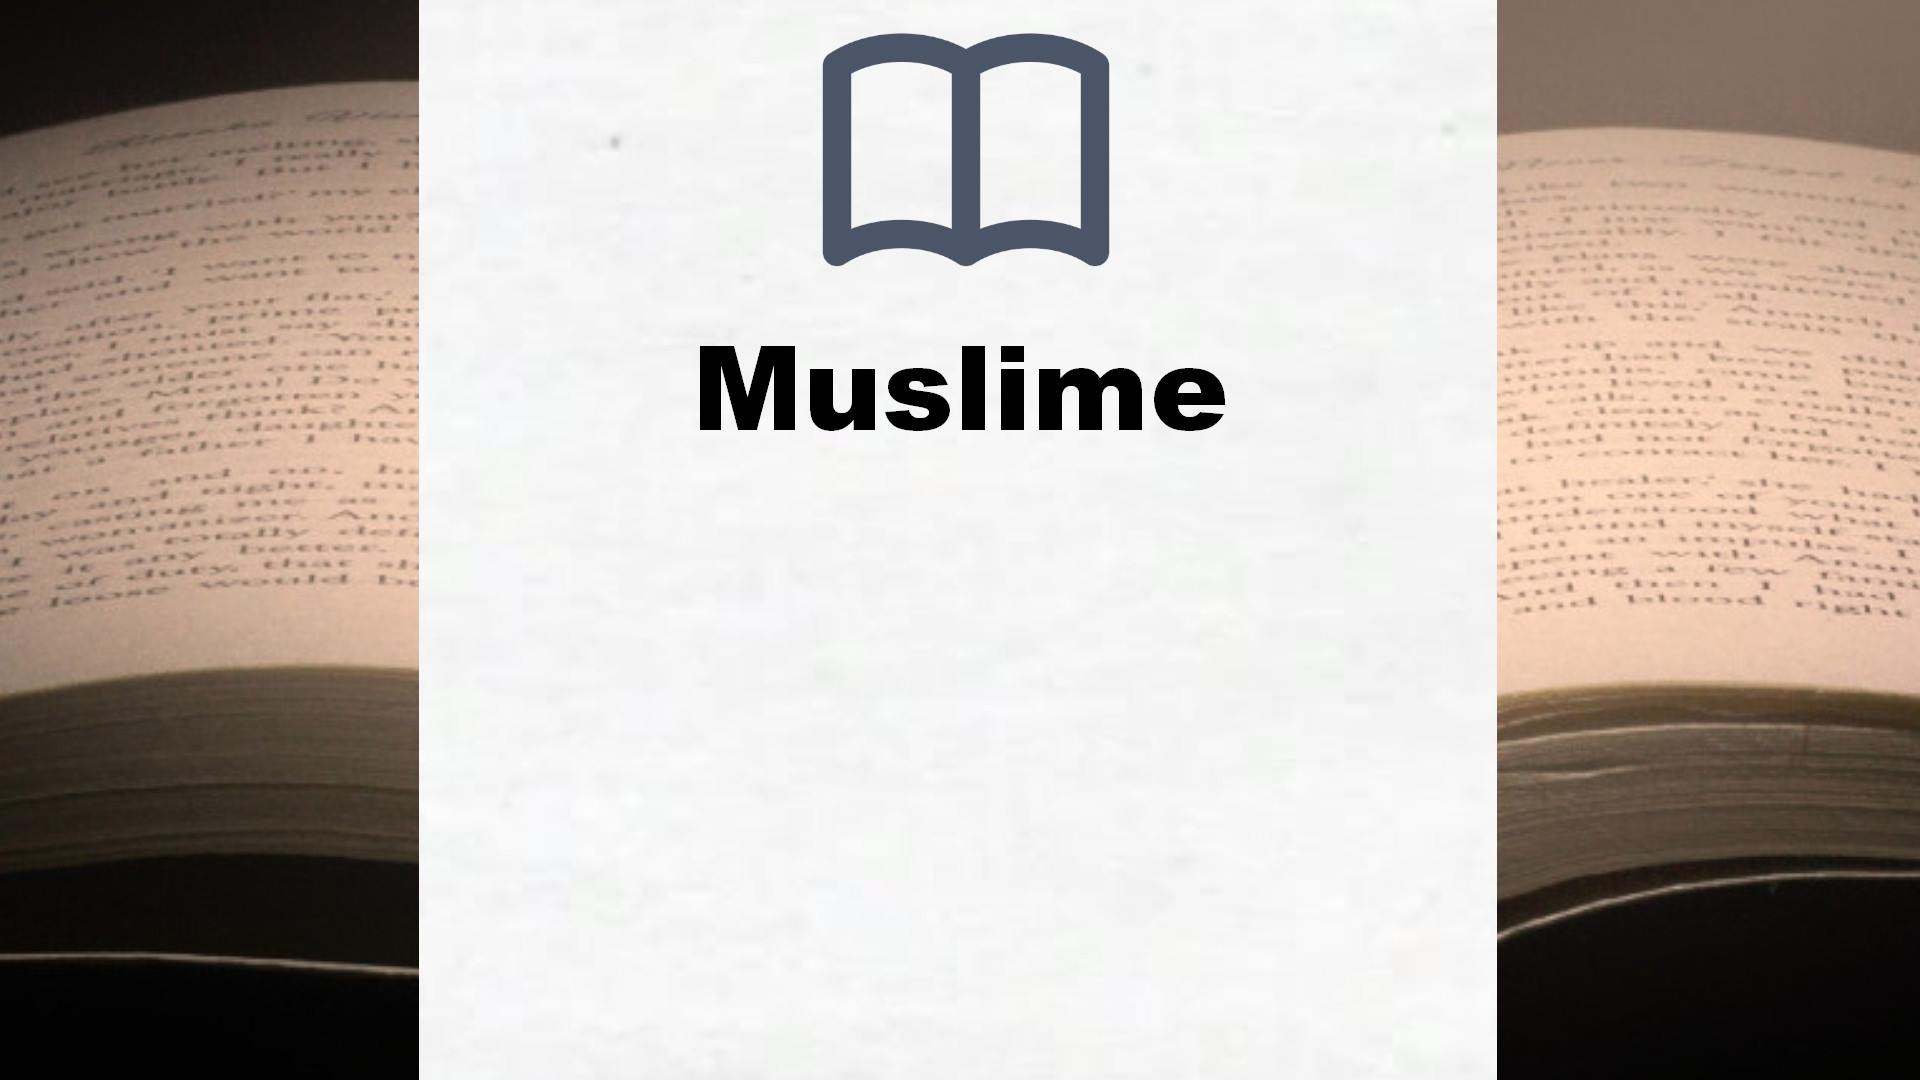 Bücher über Muslime